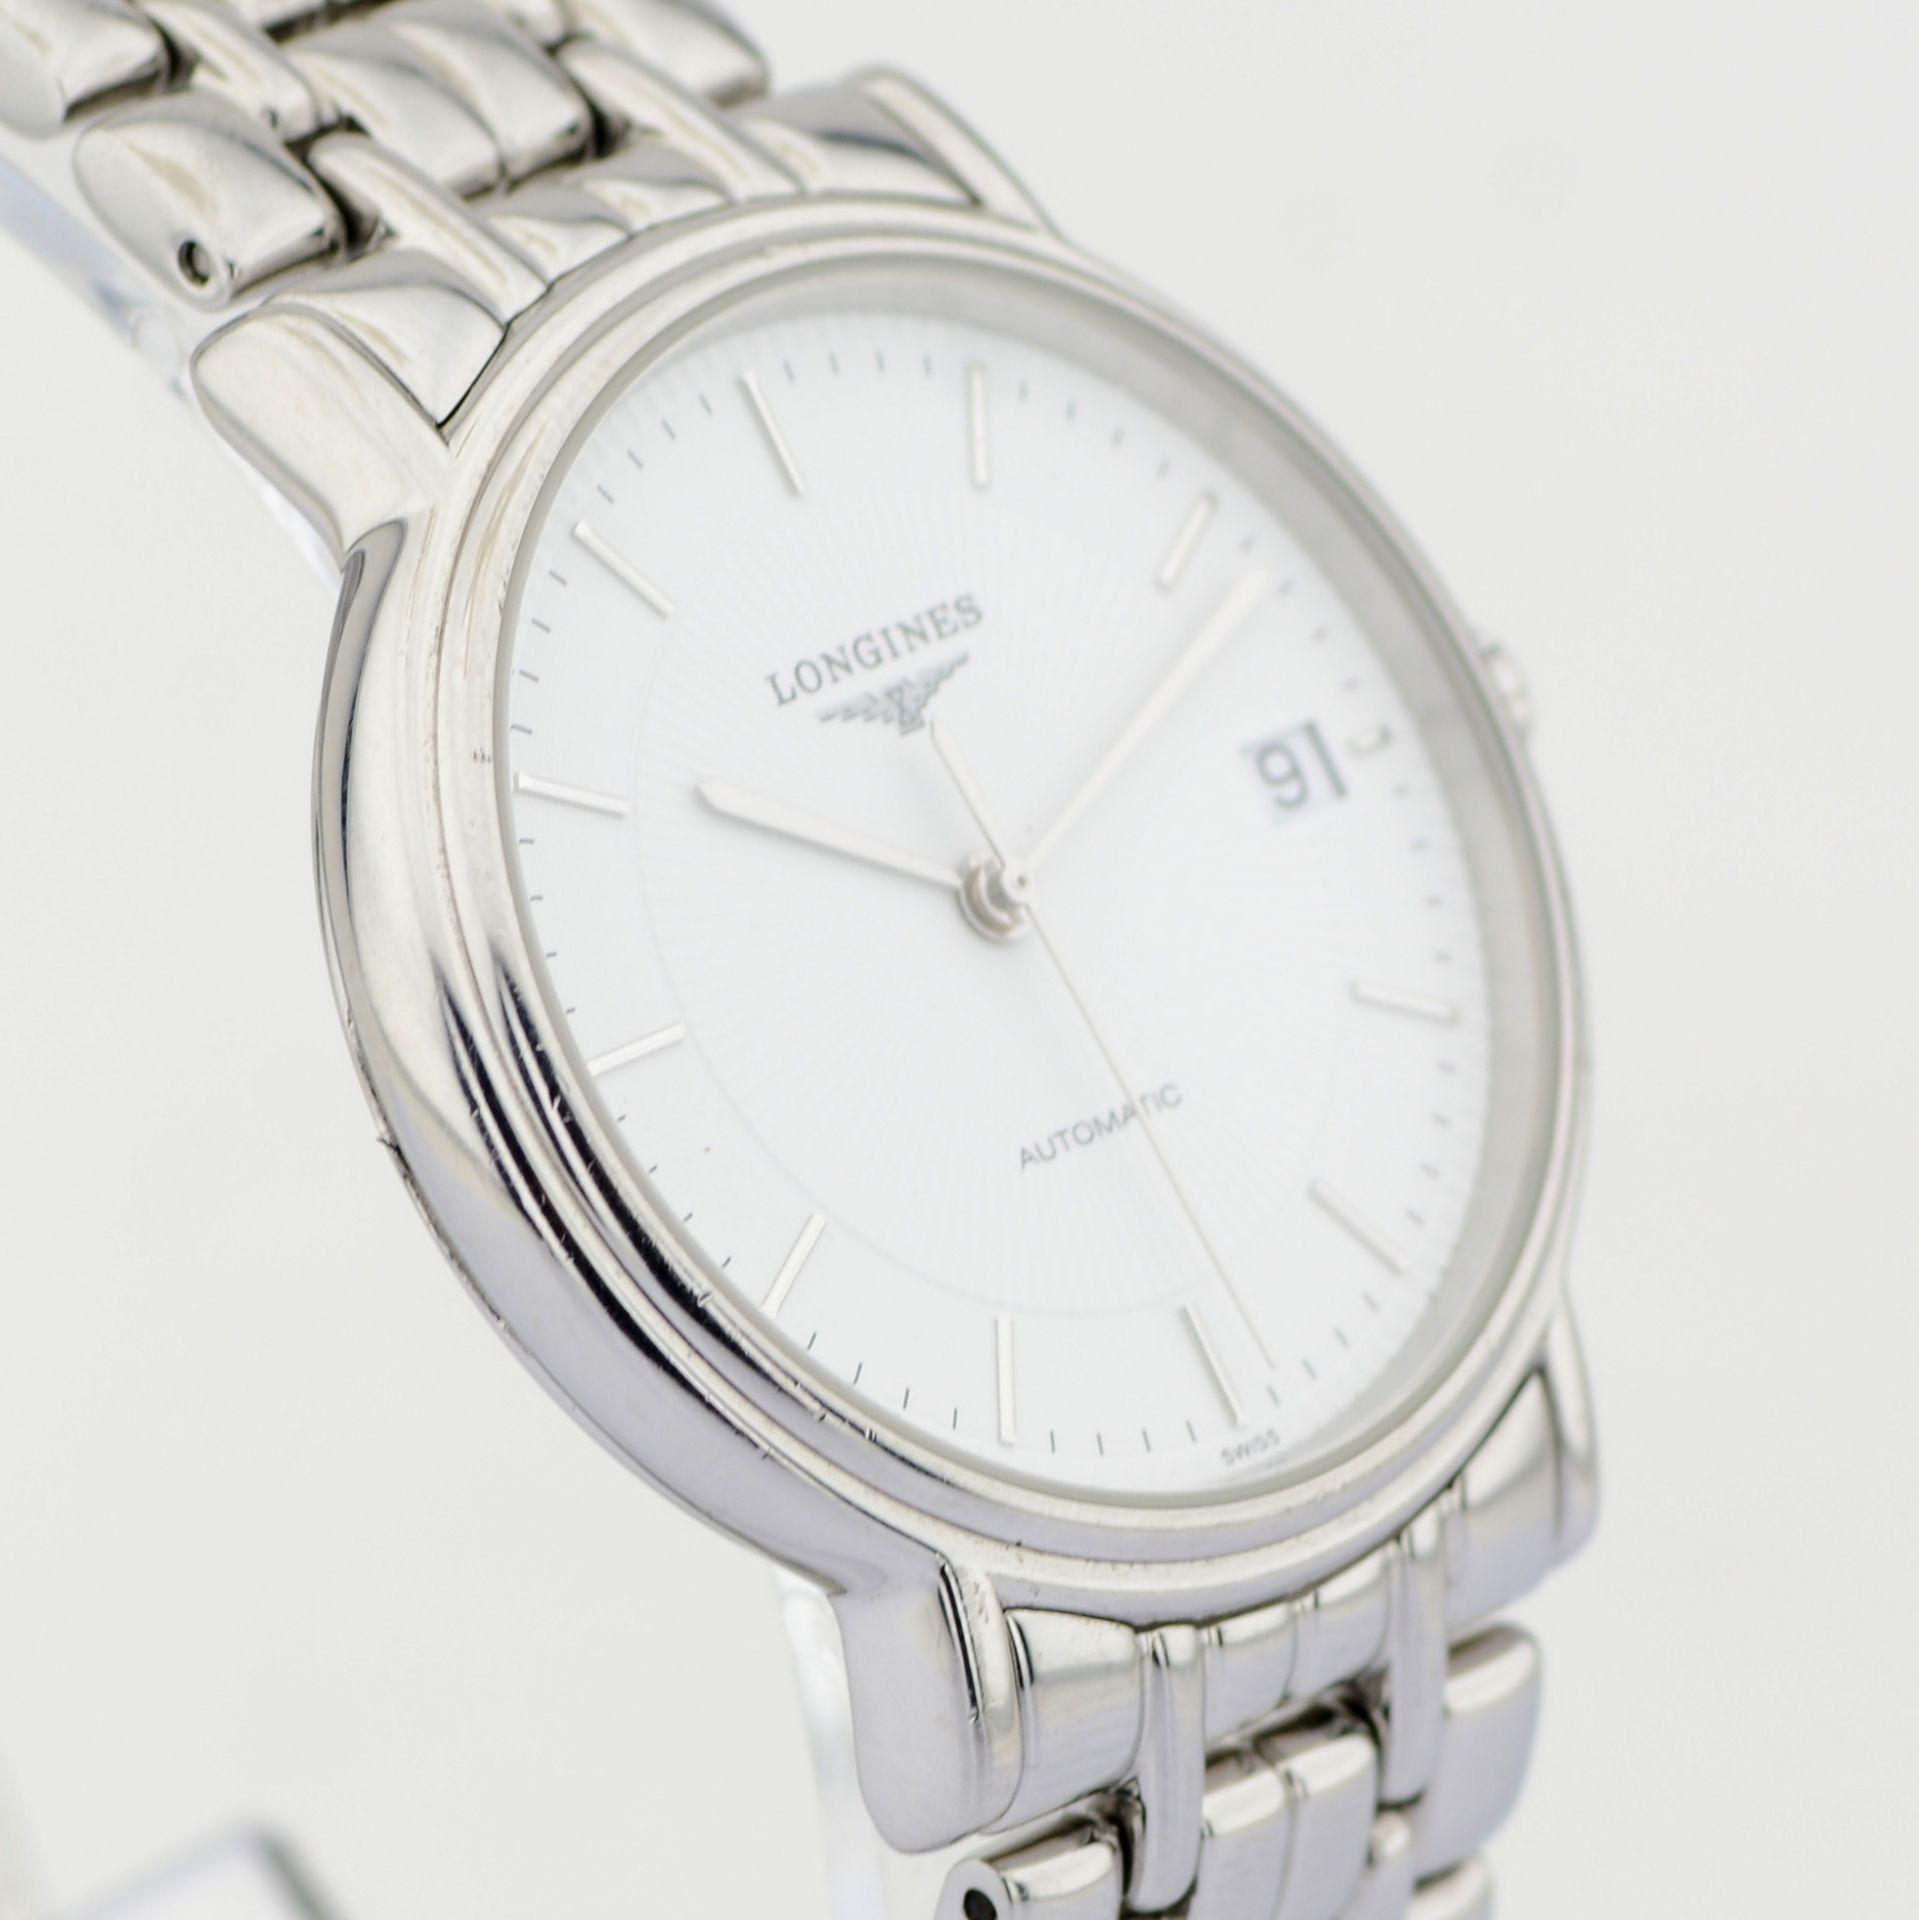 Longines / Presence Automatic Date 34 mm - Gentlmen's Steel Wrist Watch - Image 4 of 8